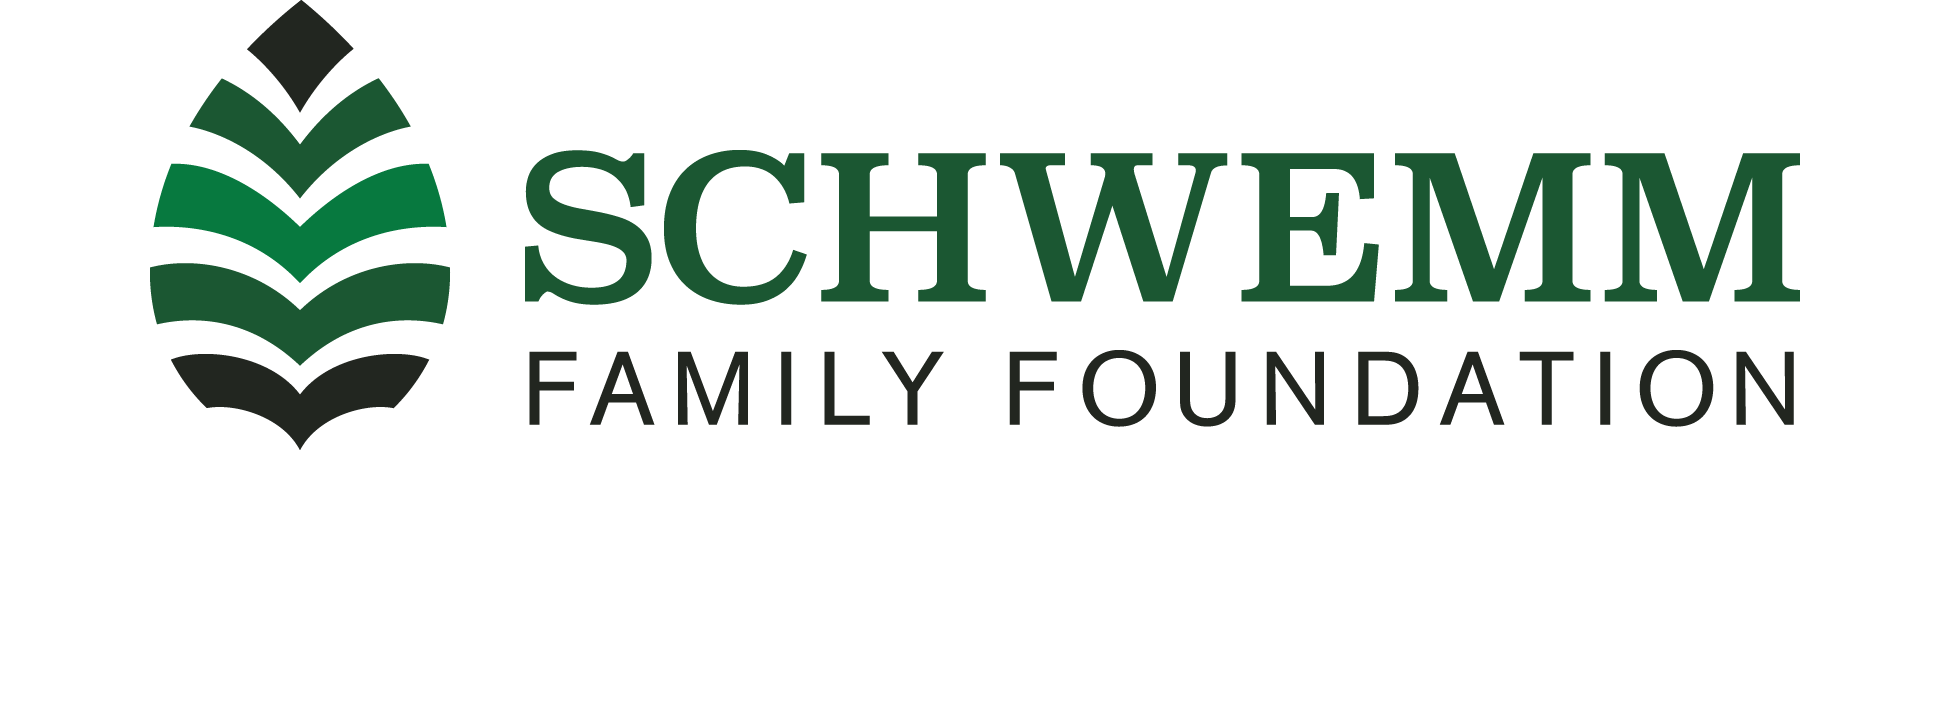 SCHWEMM FAMILY FOUNDATION